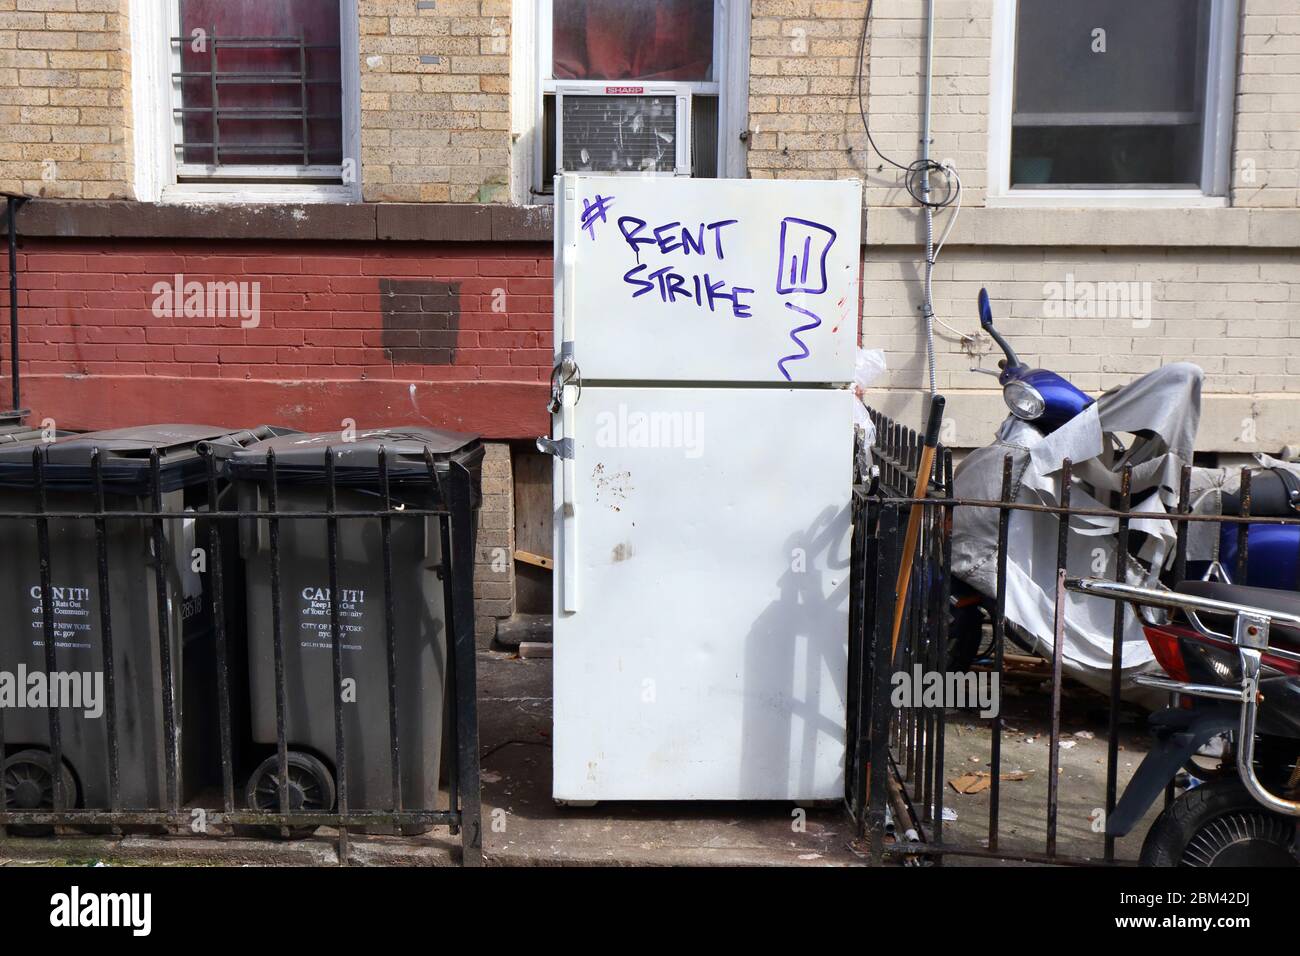 Un hashtag Rent Strike su un frigorifero a Brooklyn, New York. Licenziamenti dovuti al coronavirus... PER ULTERIORI INFORMAZIONI, VEDERE LA DIDASCALIA COMPLETA Foto Stock